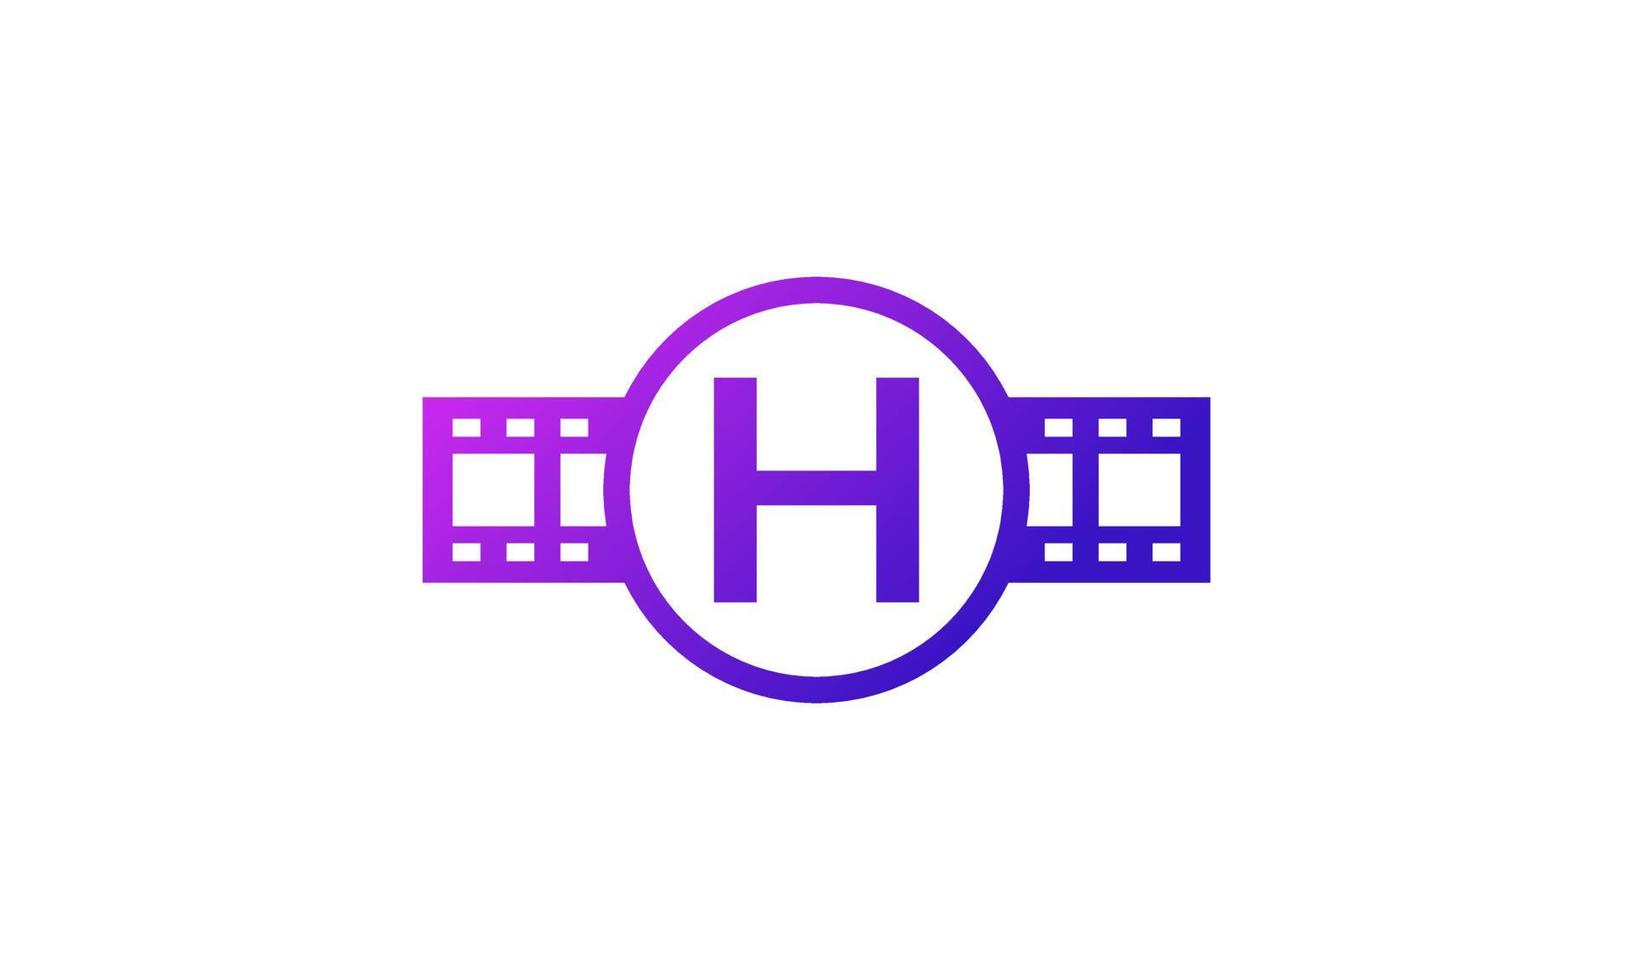 beginletter h cirkel met reel strepen filmstrip voor film film bioscoop productie studio logo inspiratie vector